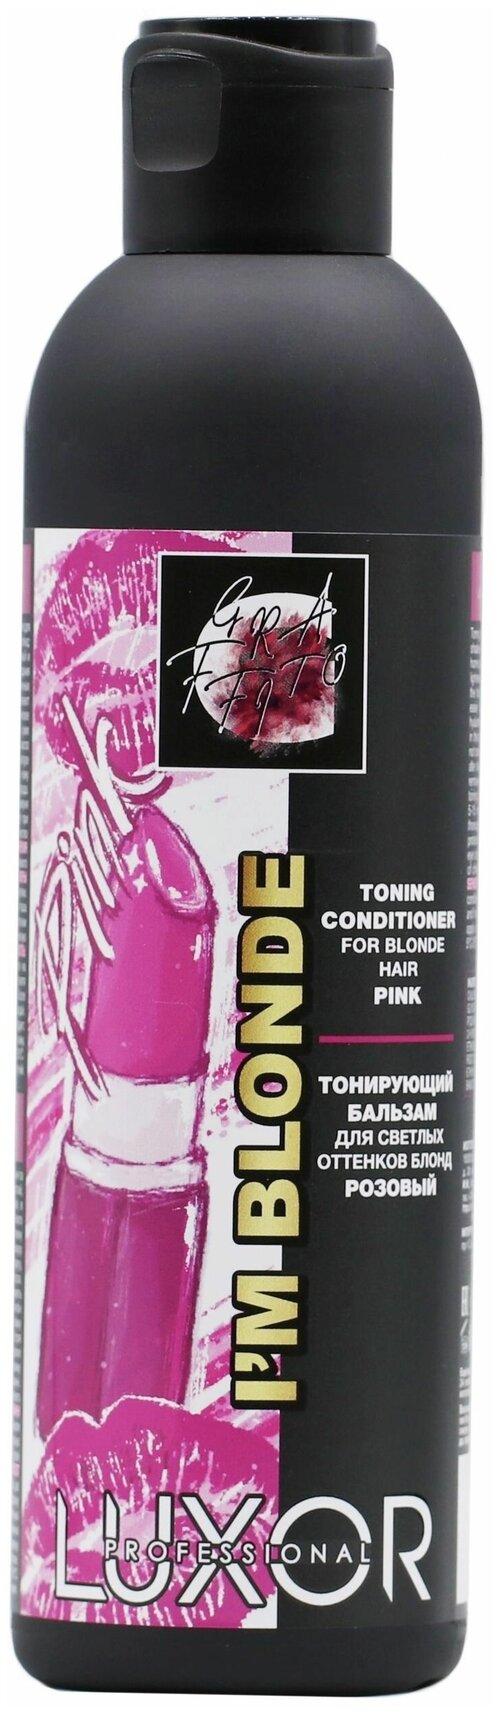 LUXOR PROFESSIONAL / Тонирующий бальзам для светлых оттенков Блонд IM BLONDE, розовый